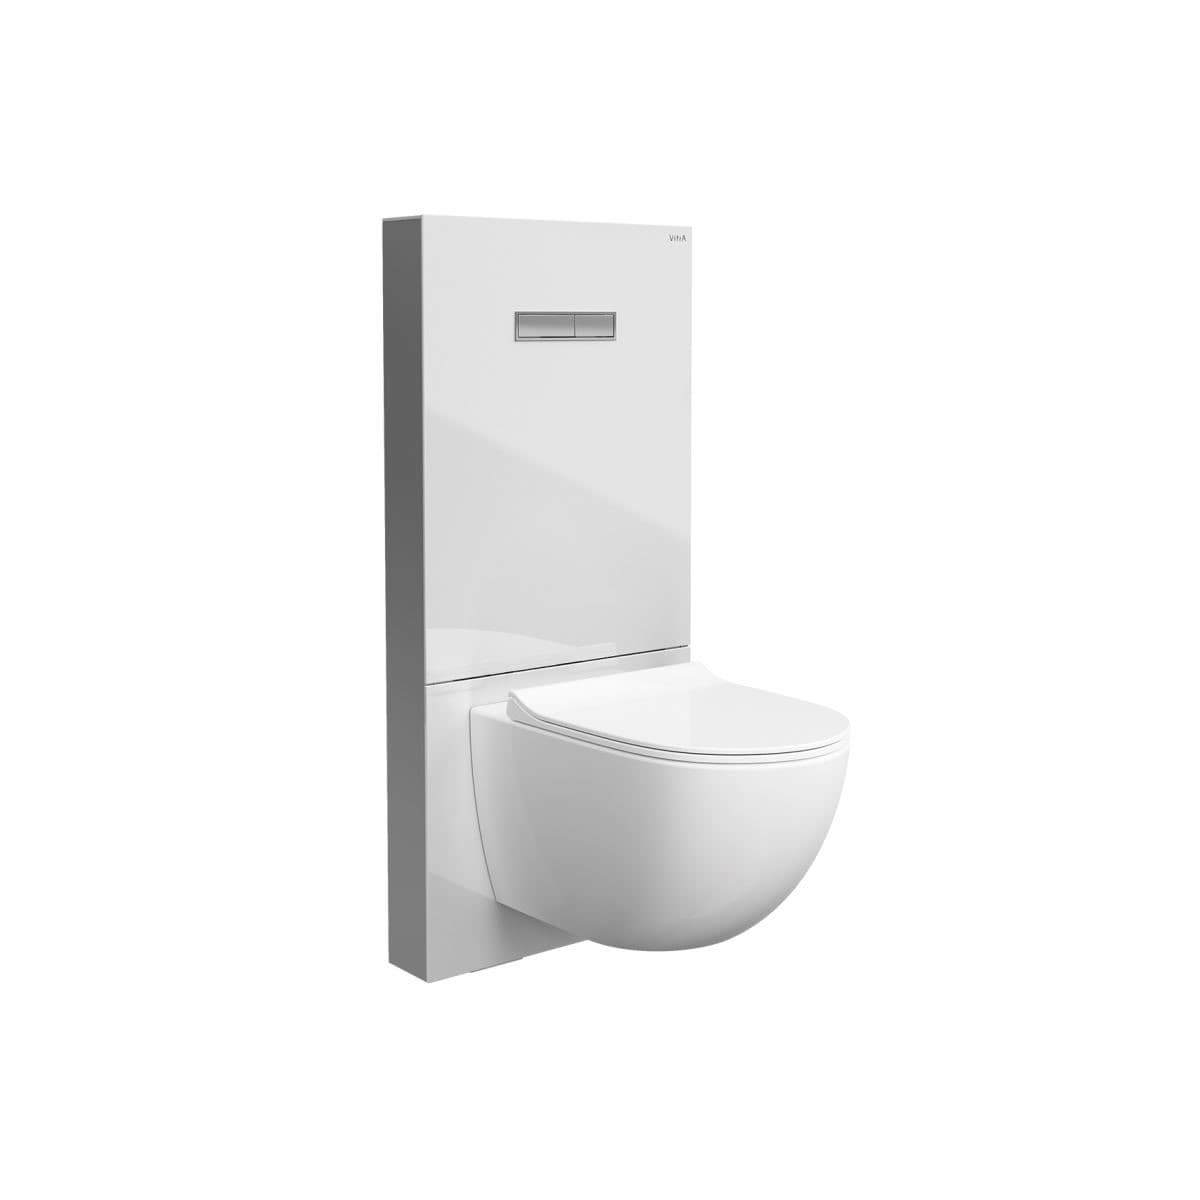 Sanitární modul VitrA Vitrus pro závěsné WC bílý 770-5760-01 Vitra